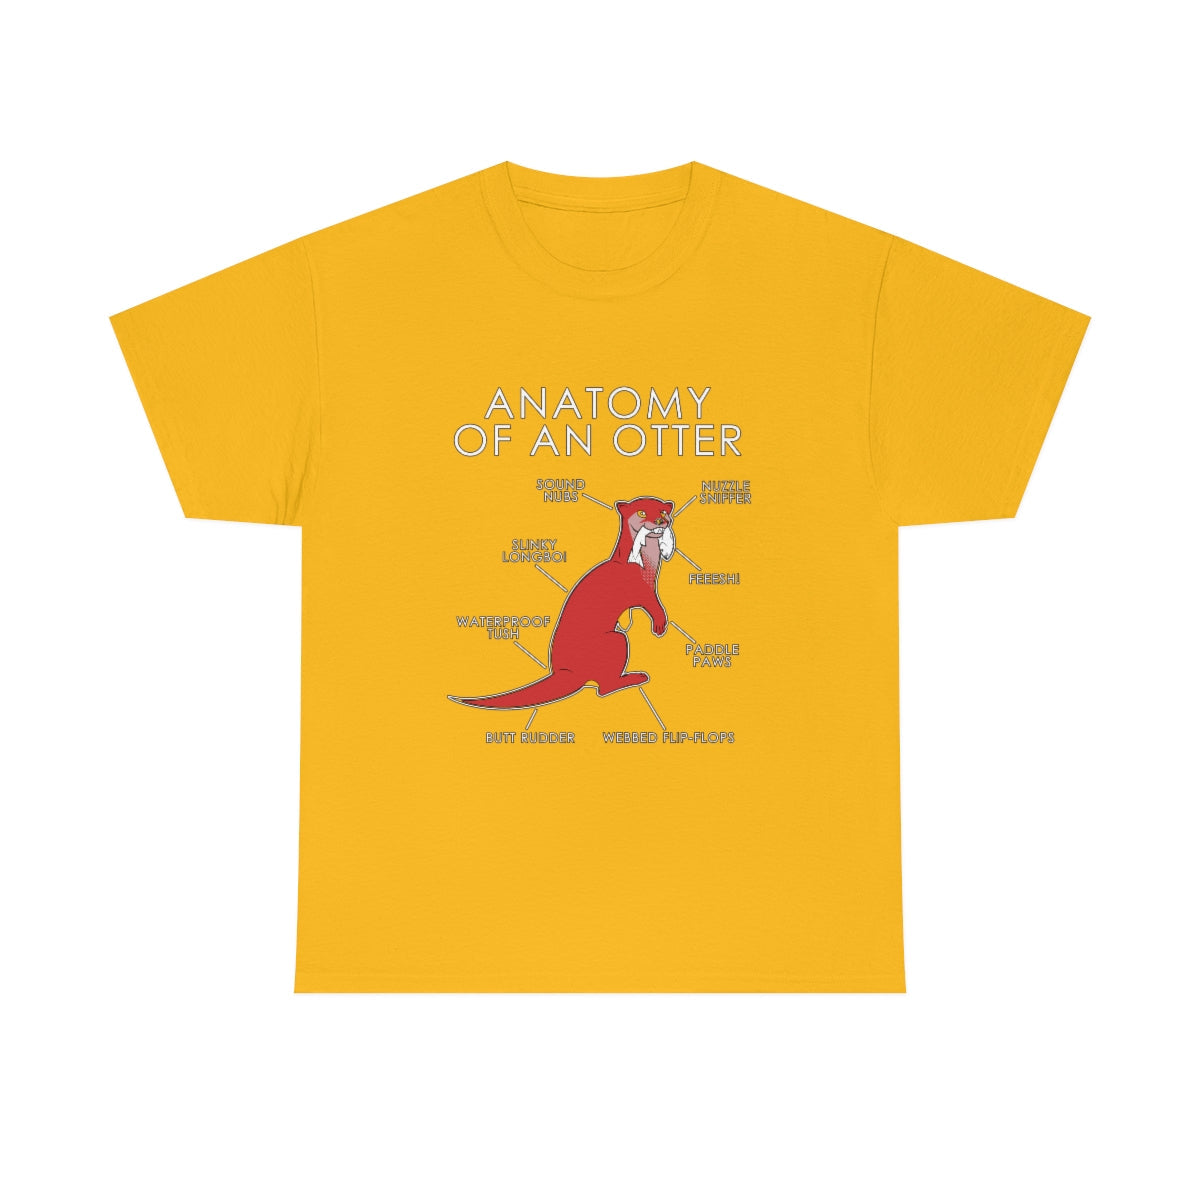 Otter Red - T-Shirt T-Shirt Artworktee Gold S 